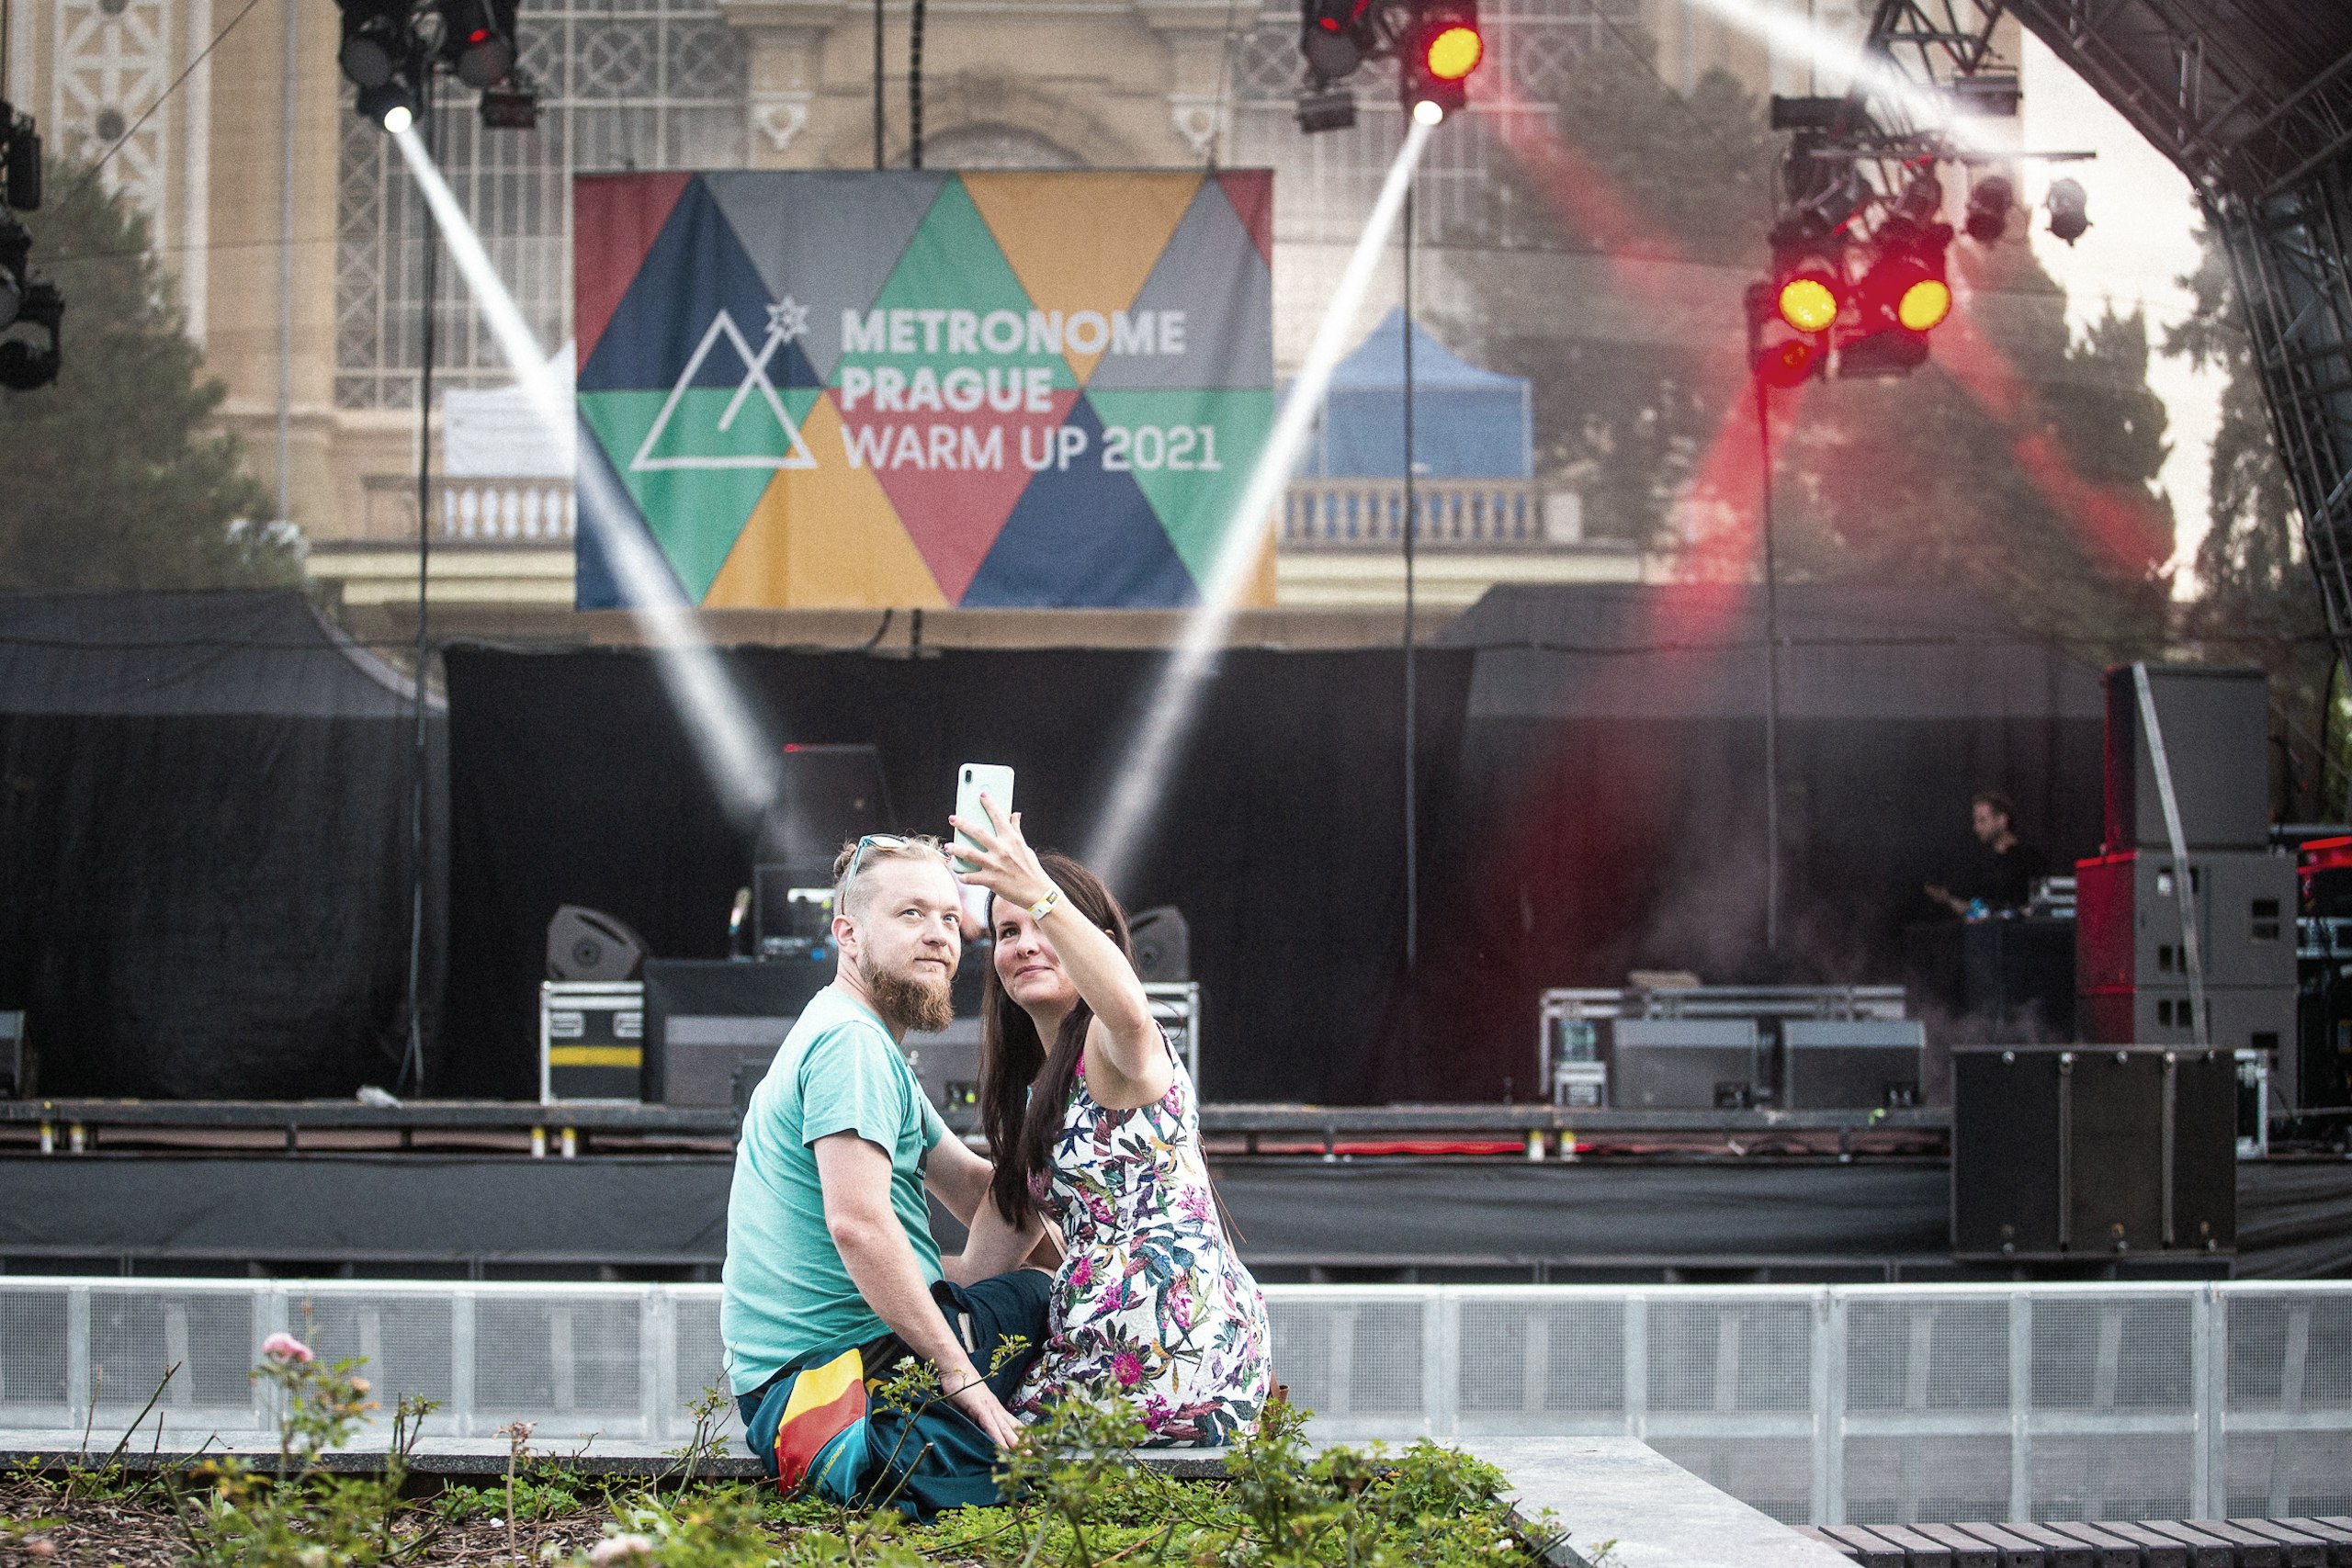 Dva návštěvníci se fotí před hlavním podiem festivalu Metronome Prague Warm Up 2021